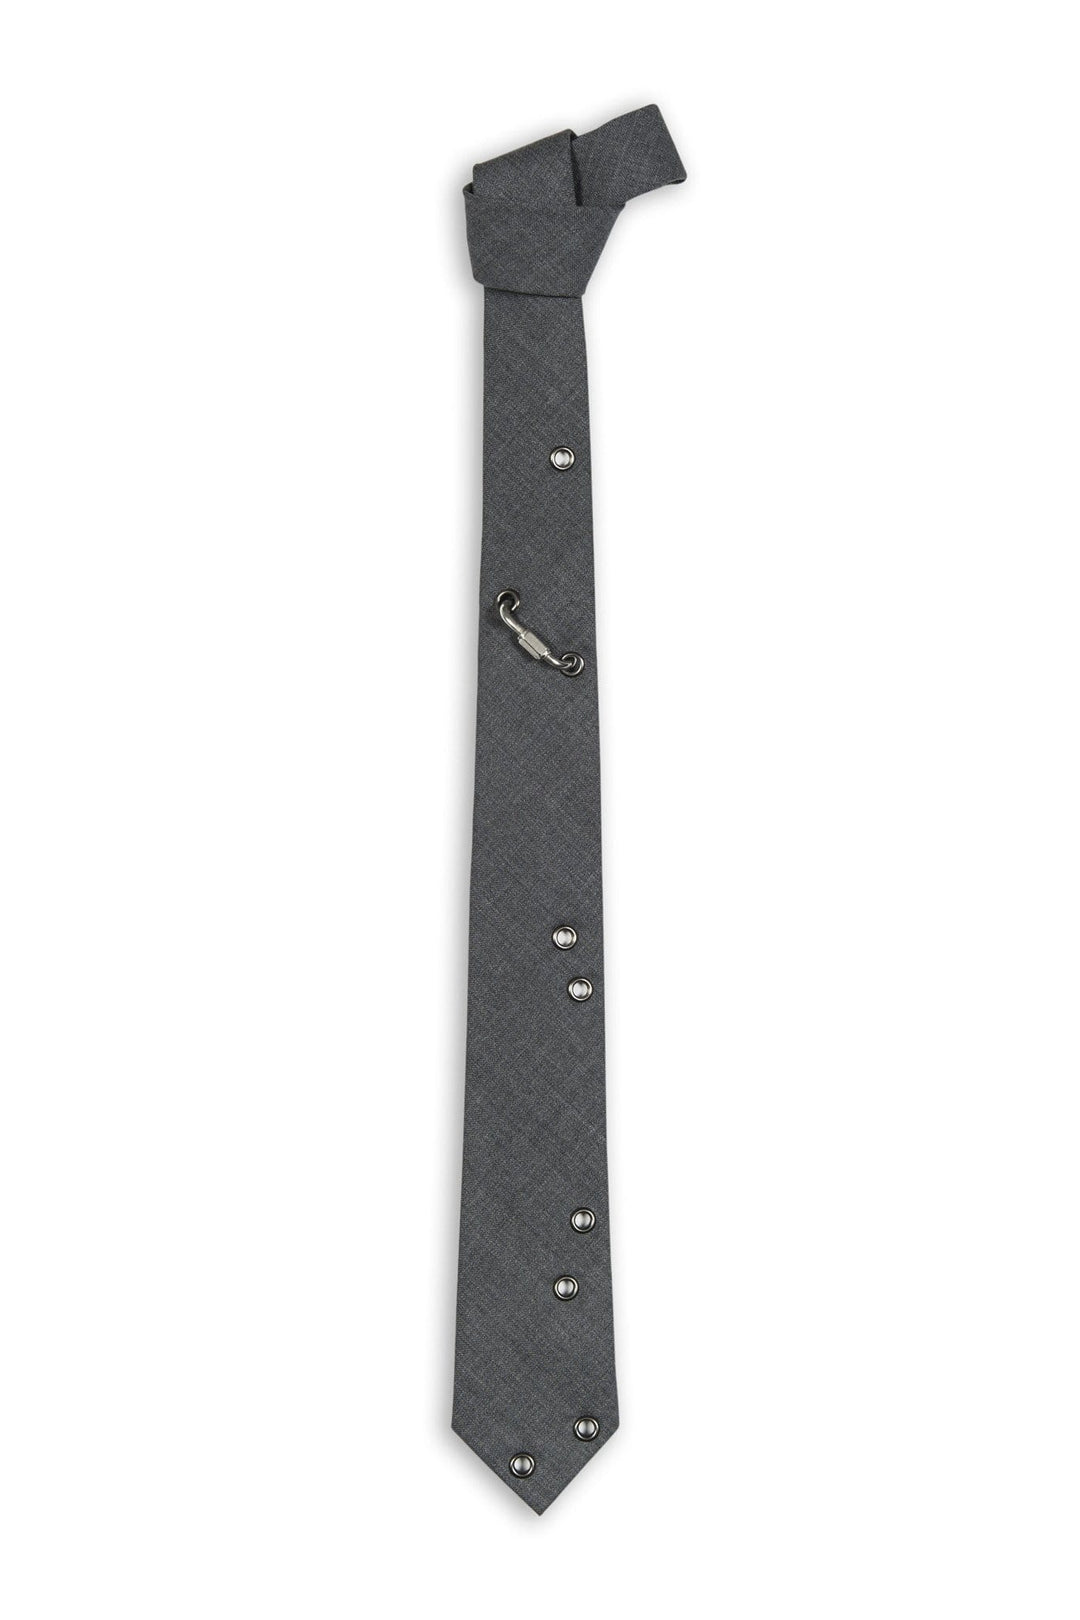 Swell Fellow Cravate 2.5" x 58" - Sans le mouchoir assorti / Gris / 100% Laine Cravate Bruno